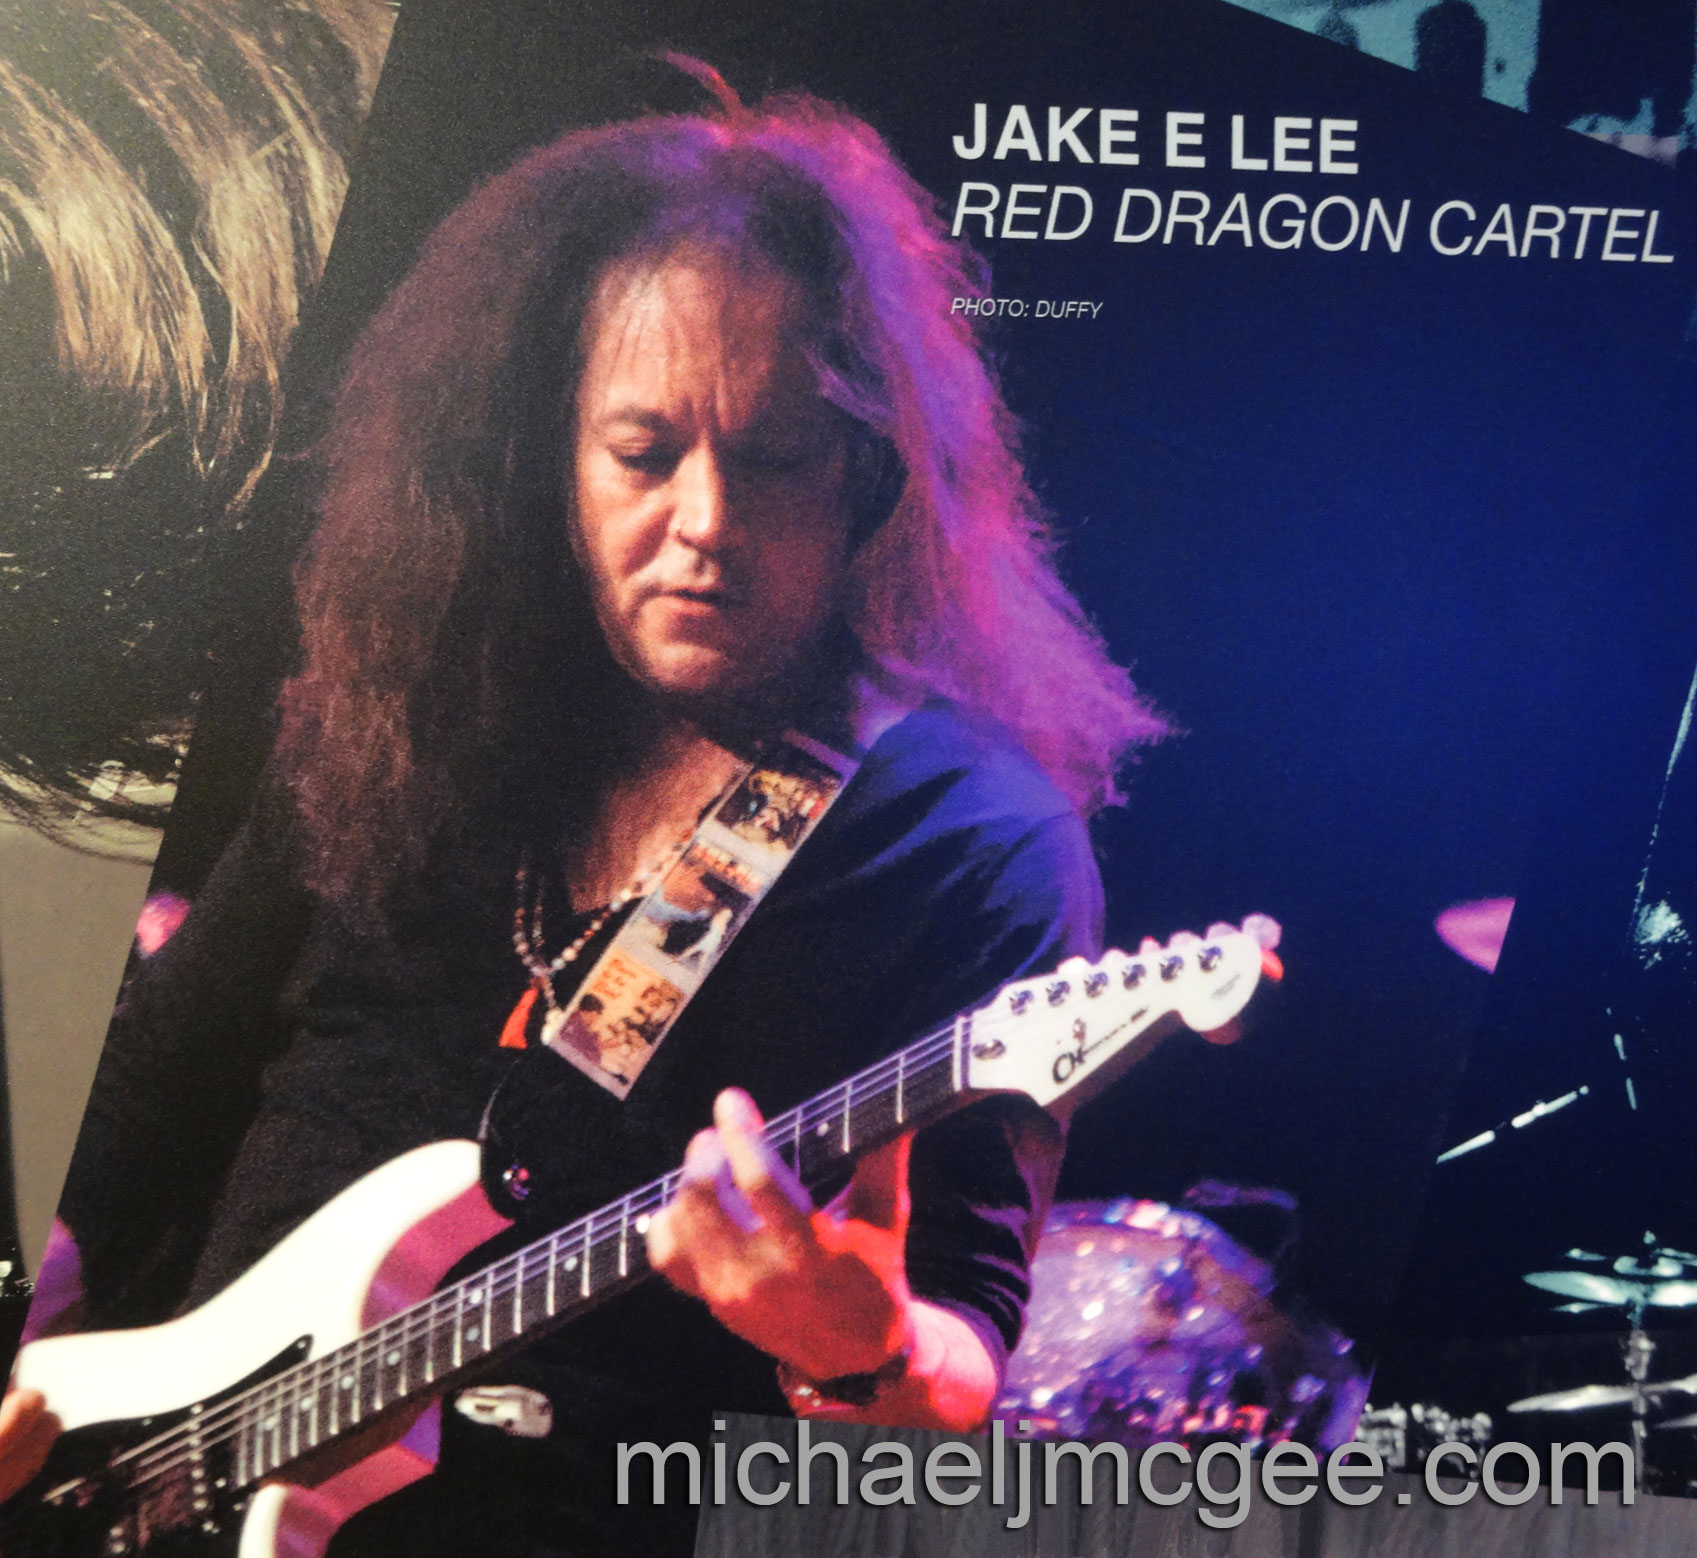 Jake E Lee / michaeljmcgee.com